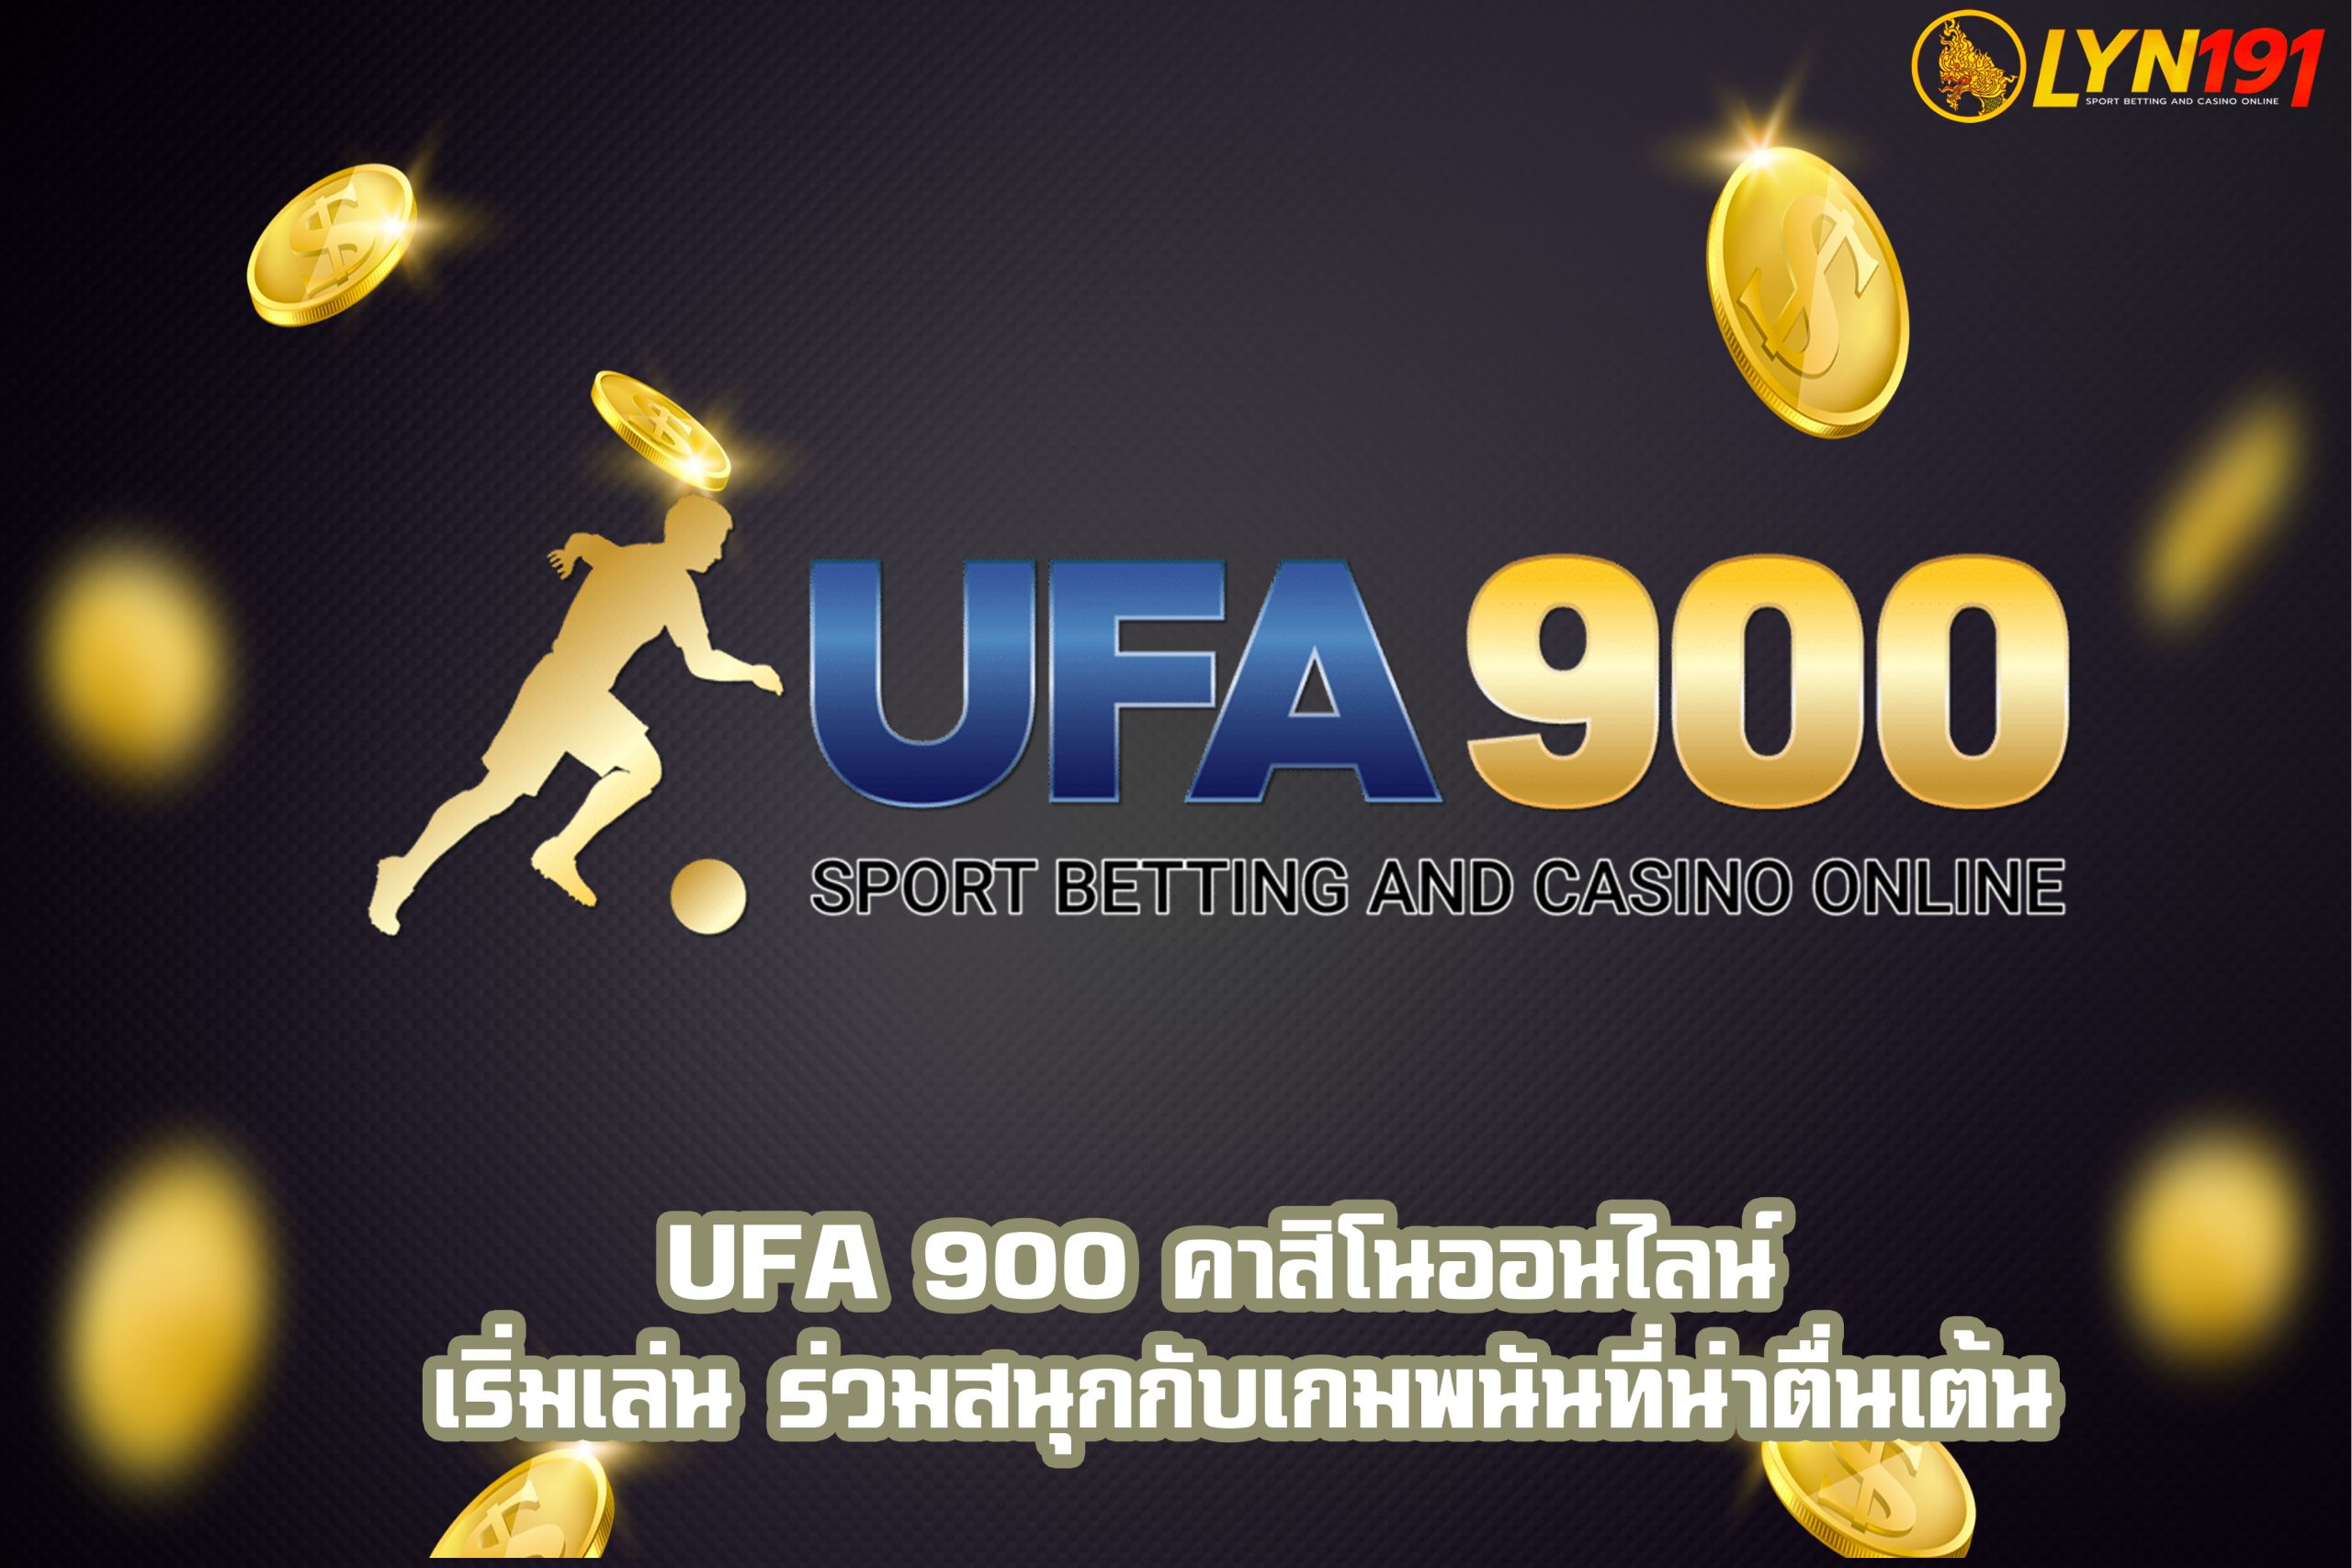 UFA 900 คาสิโนออนไลน์ เริ่มเล่น ร่วมสนุกกับเกมพนันที่น่าตื่นเต้น